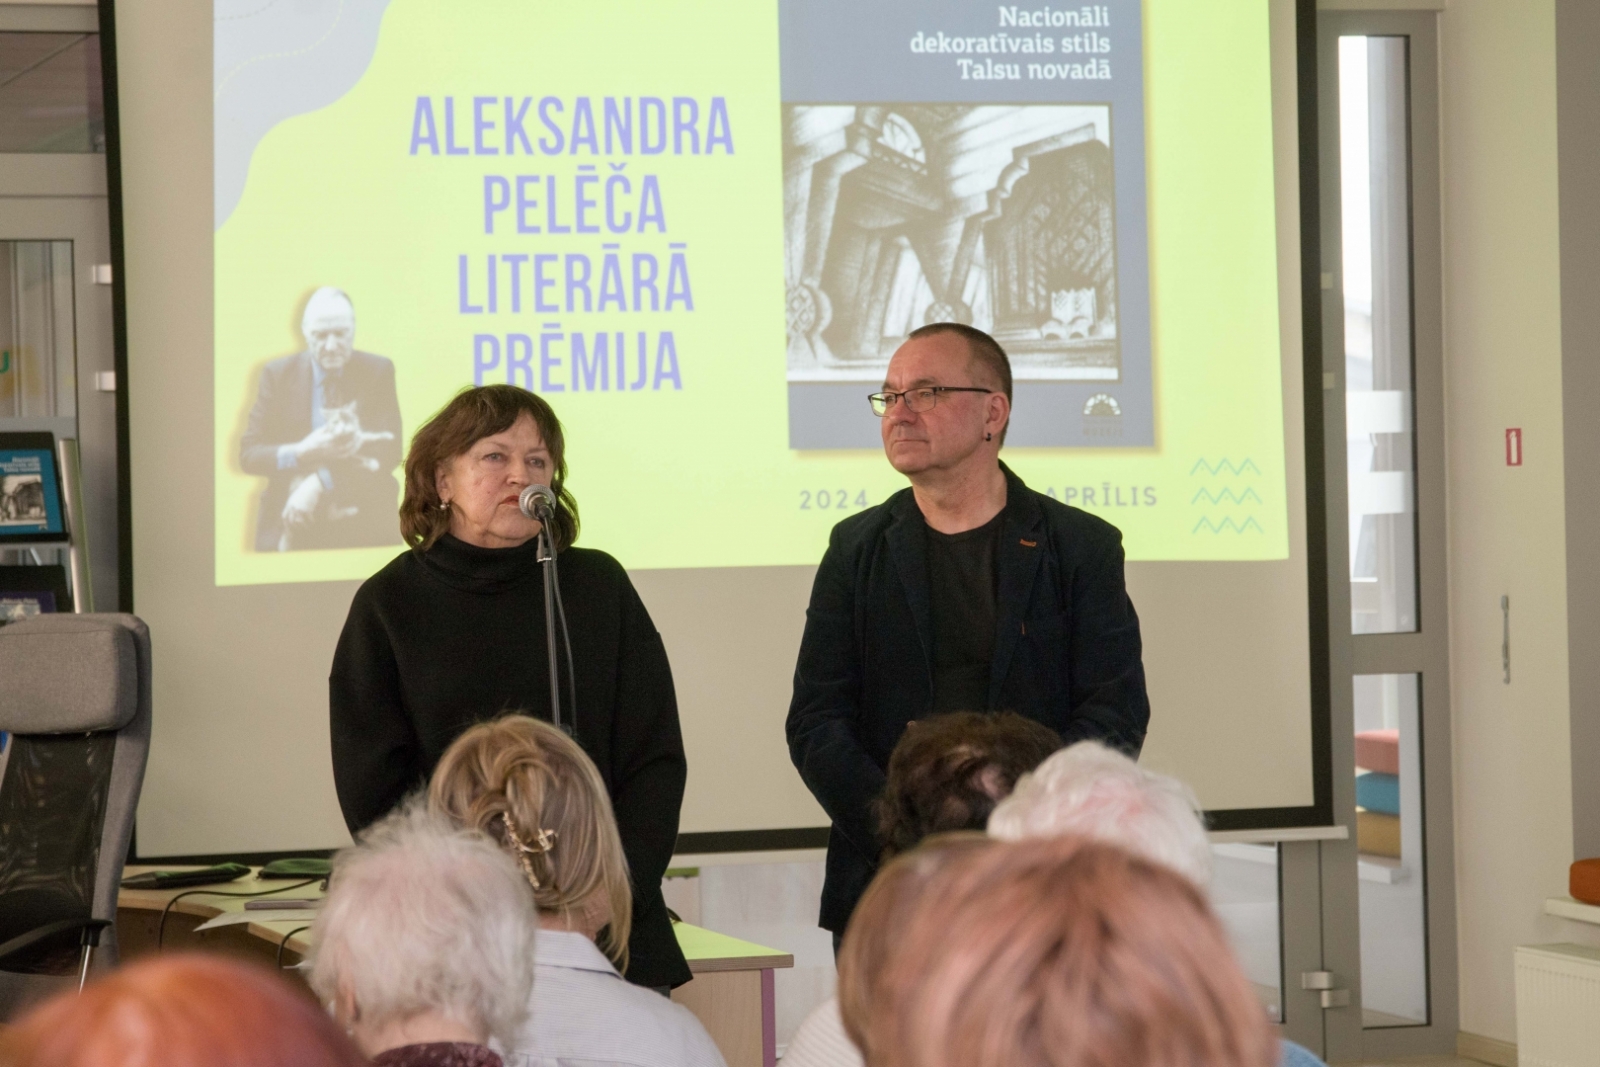 Aleksandra Pelēča literārā prēmija piešķirta grāmatai „Nacionāli dekoratīvais stils Talsu novadā”